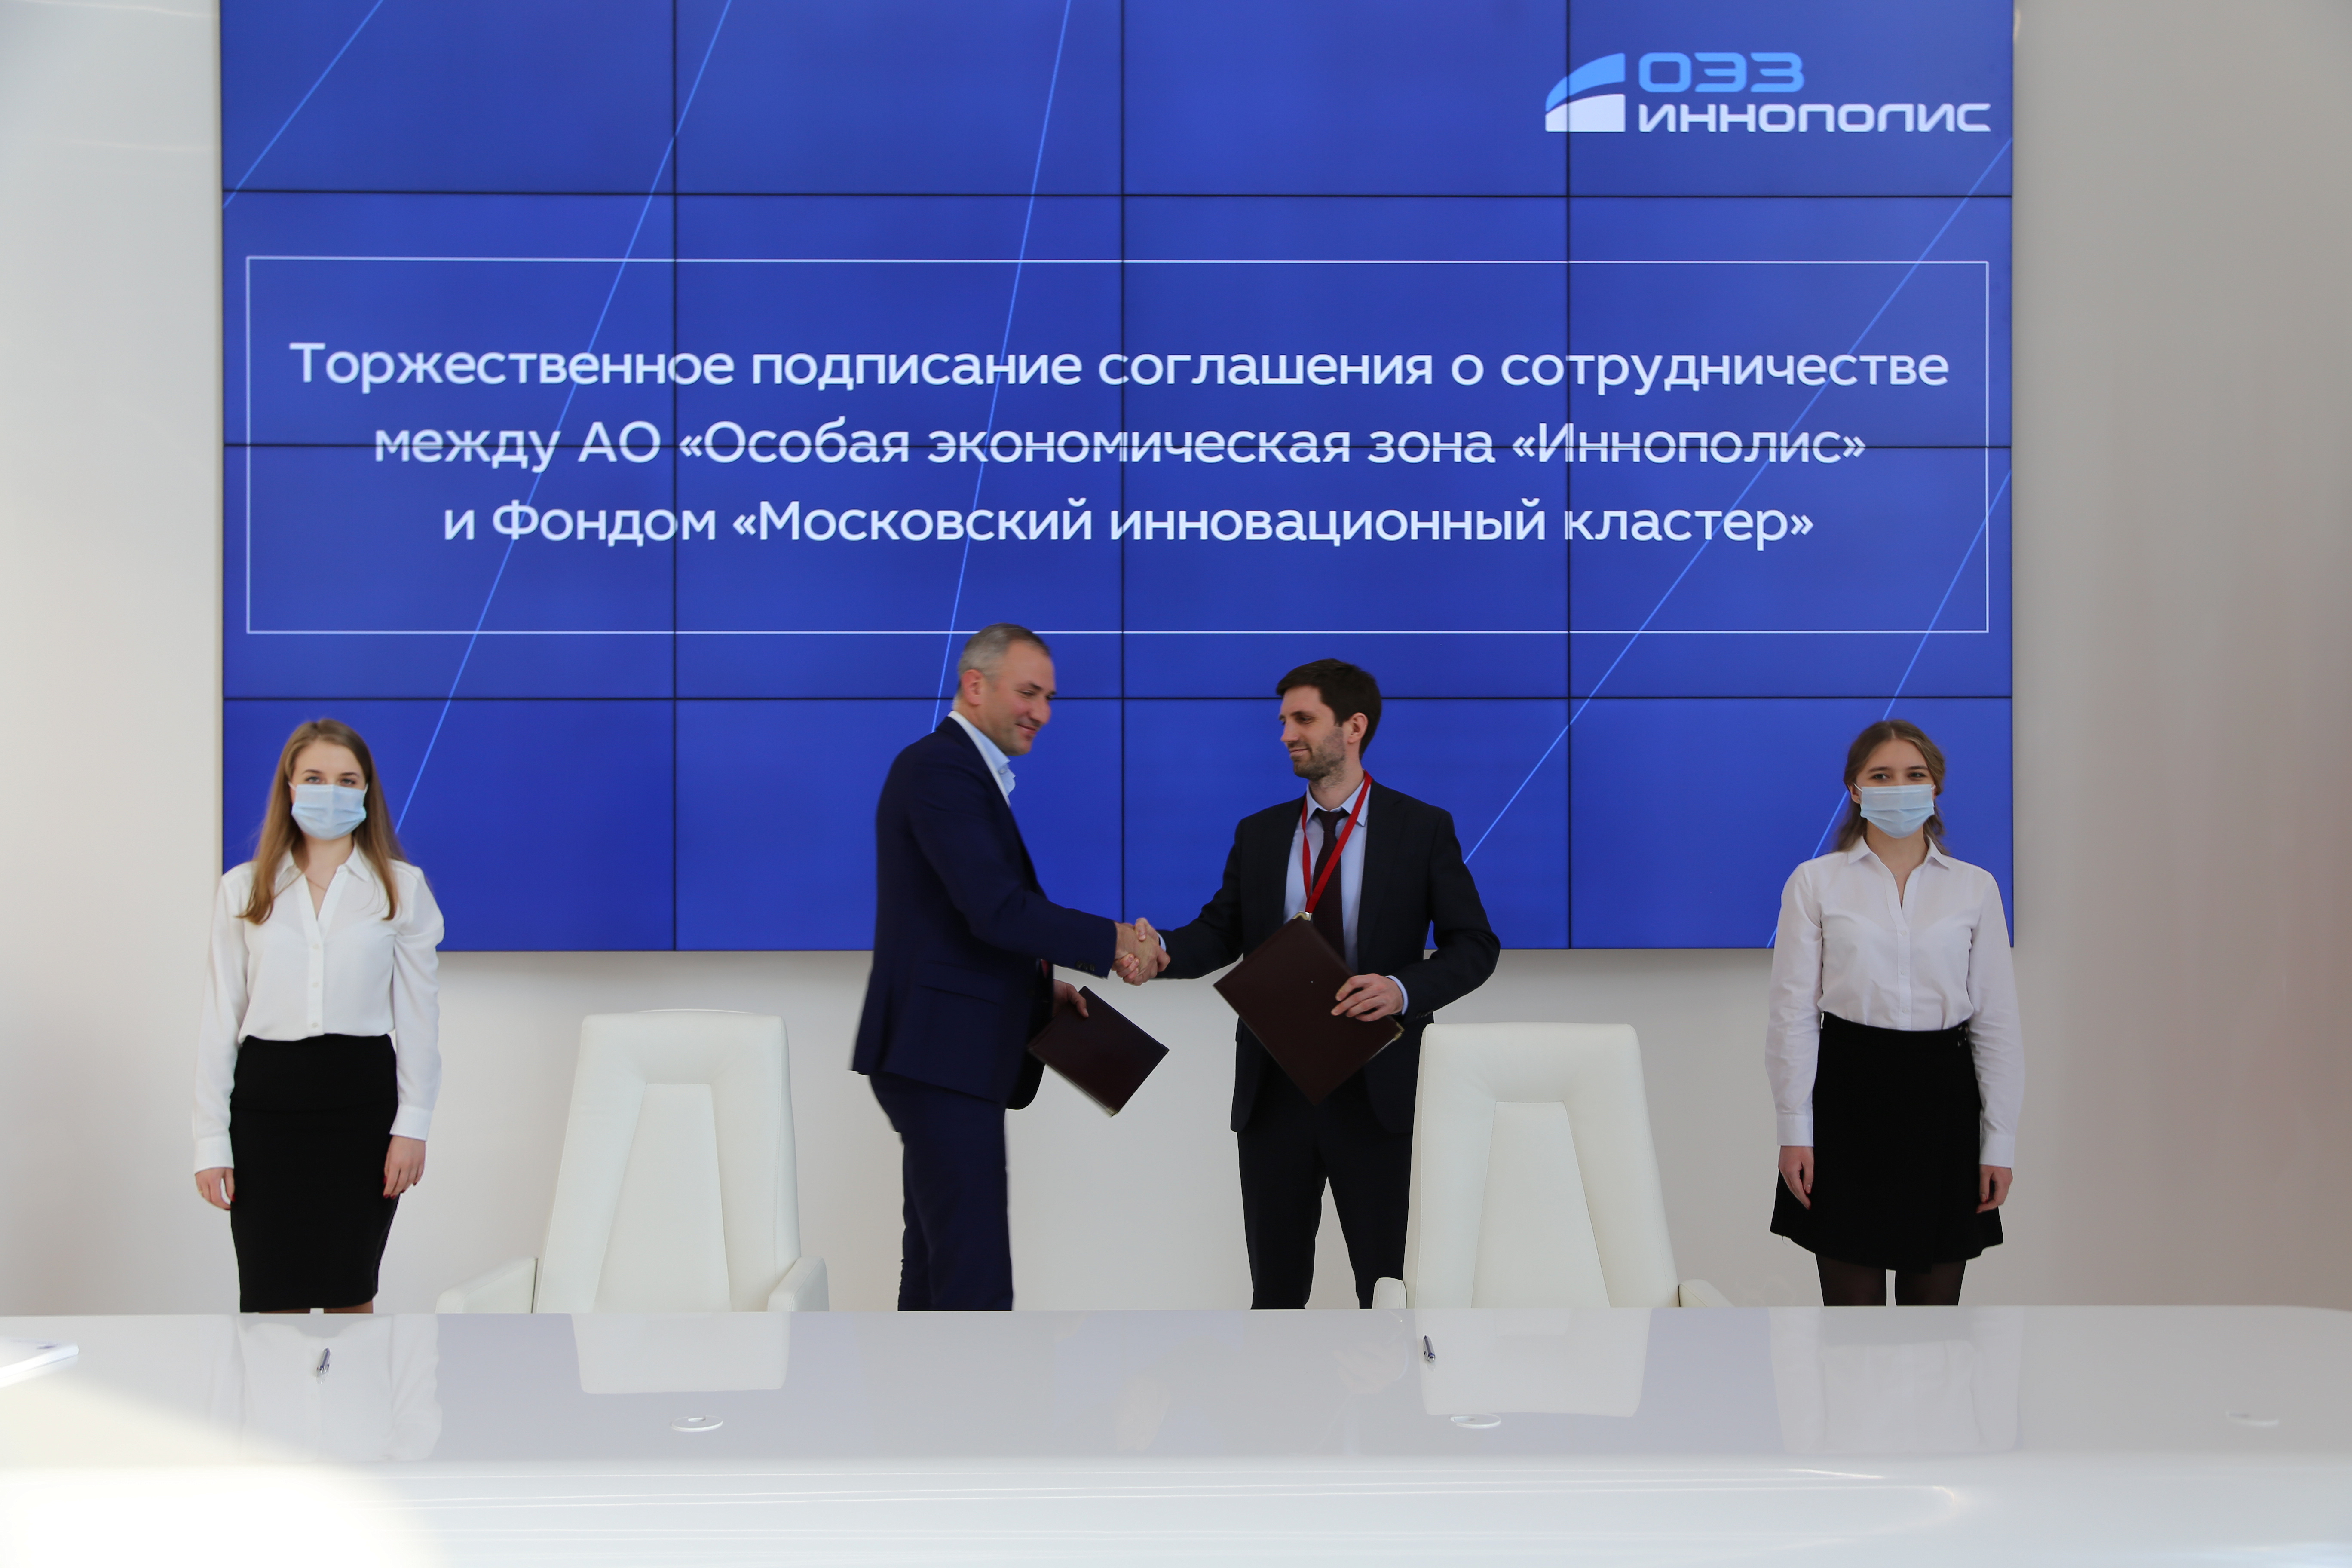 ОЭЗ «Иннополис» стала участником Российского венчурного форума и подписала соглашение о сотрудничестве с Московским инновационным кластером 